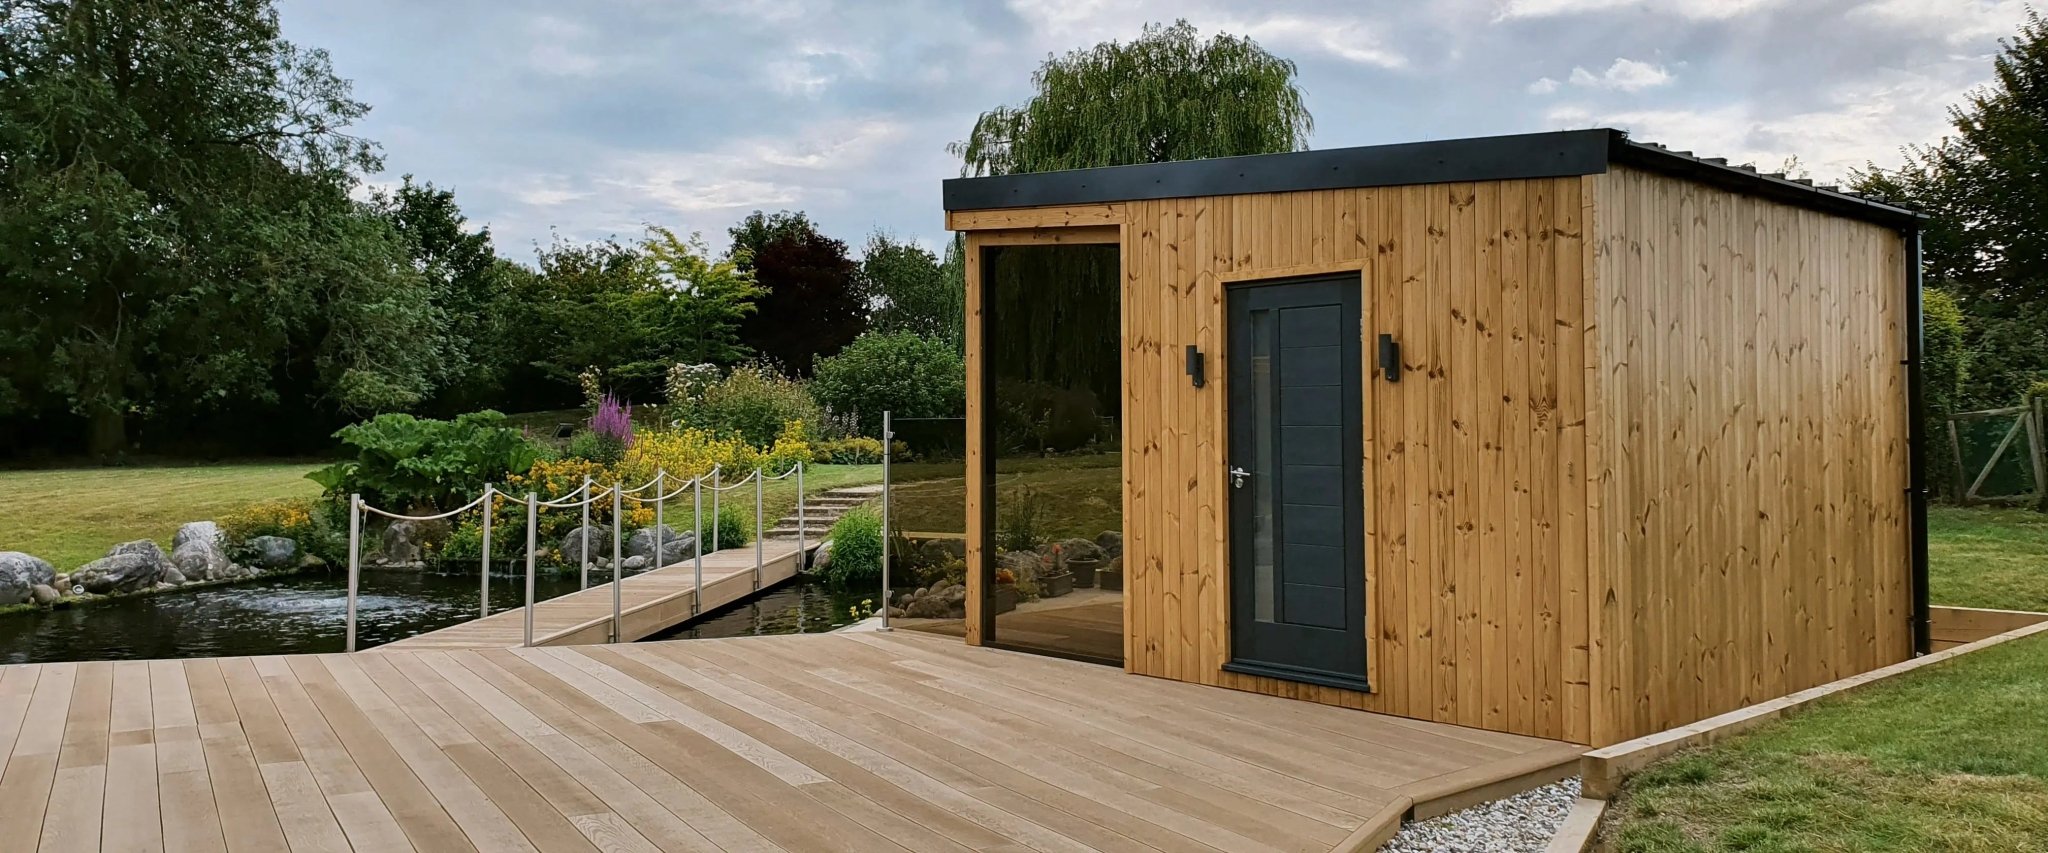 Bespoke outdoor sauna installation: Radley Green, Chelmsford, Essex - Finnmark Sauna